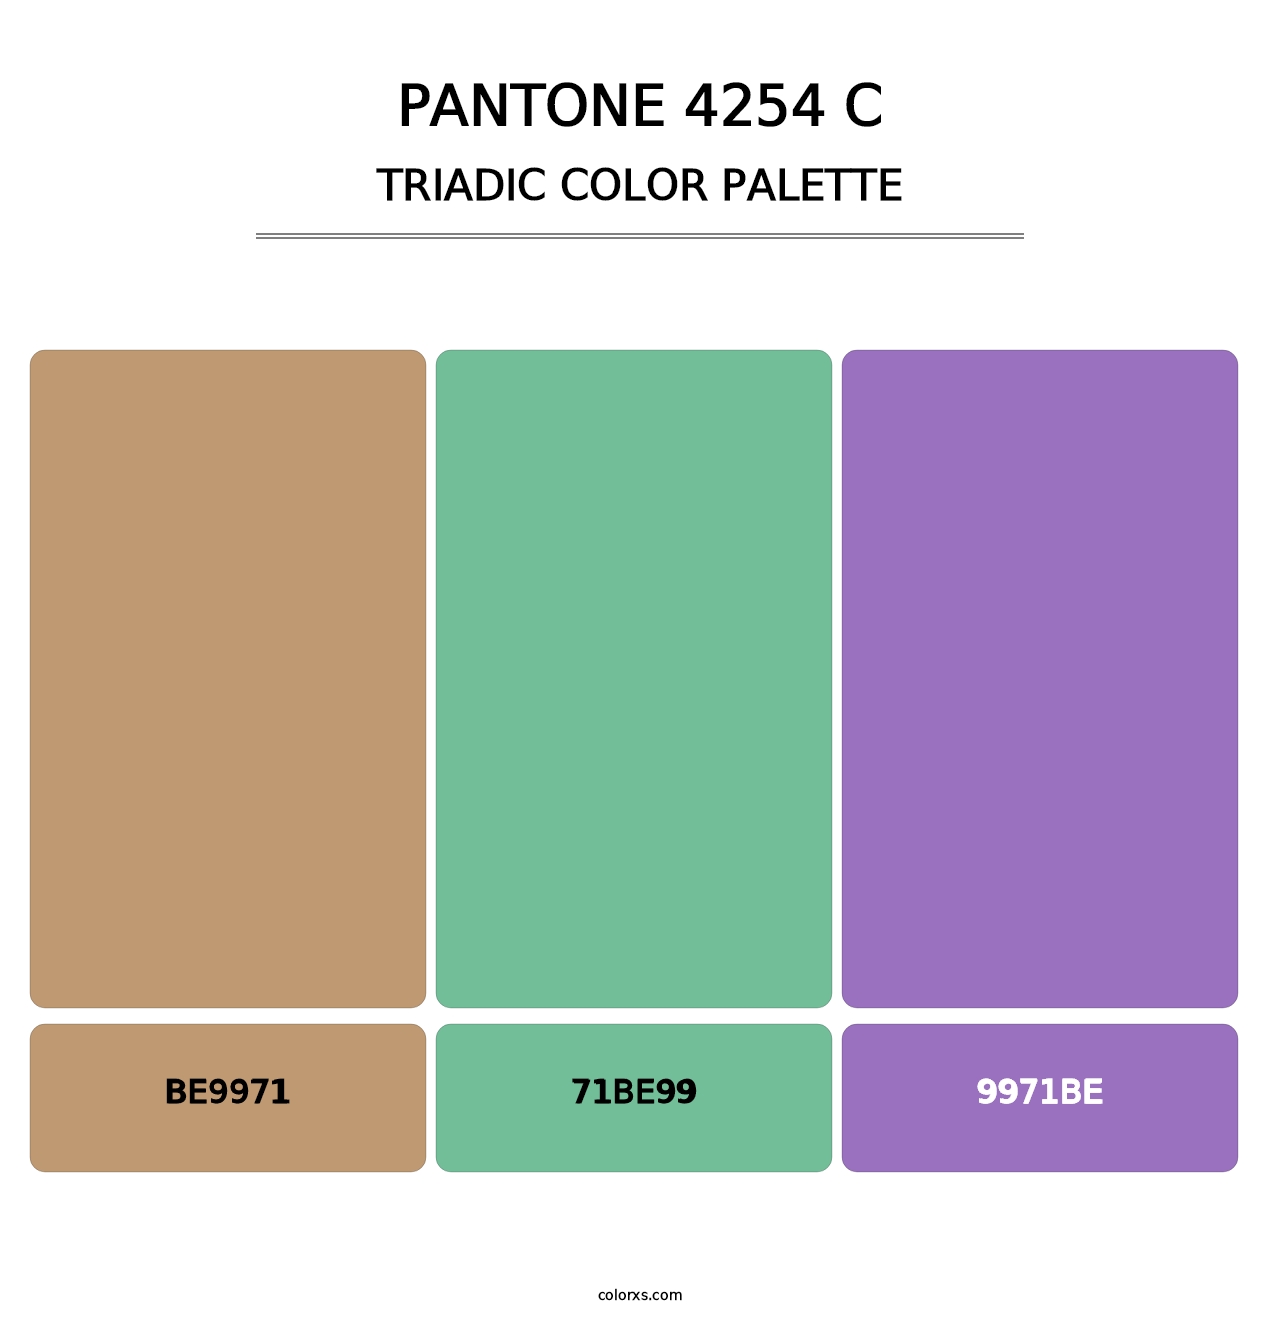 PANTONE 4254 C - Triadic Color Palette